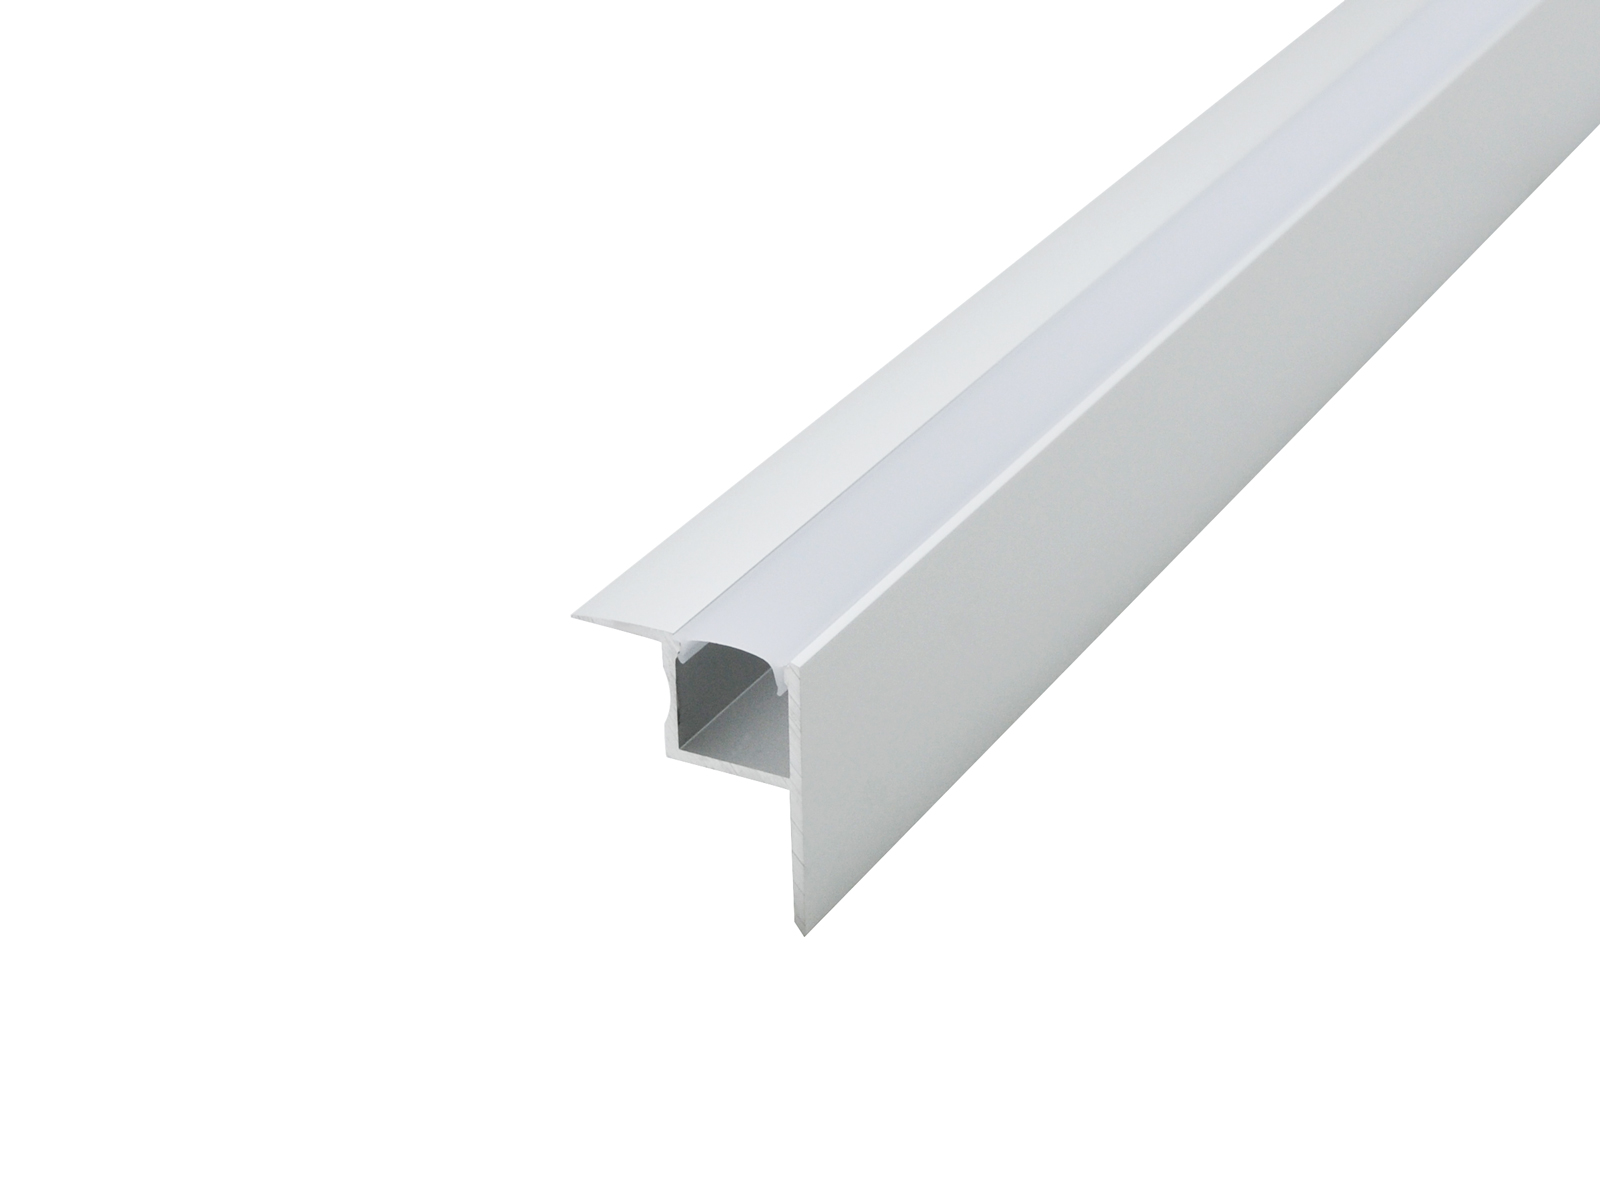 LED Profil für den Deckeneinbau silber mit Abdeckung 2m kaufen | PUR-LED